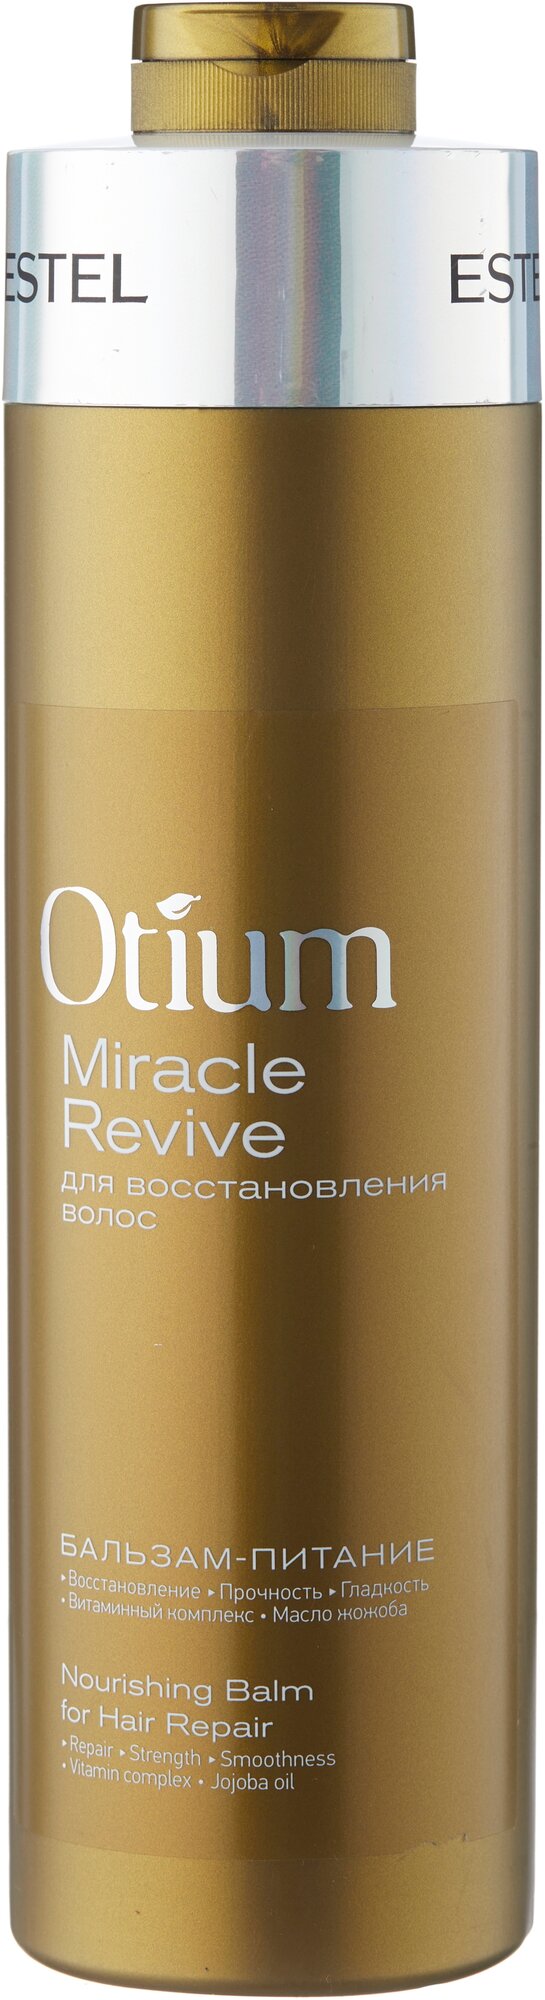 Estel Professional Бальзам-питание для восстановления волос OTIUM MIRACLE REVIVE, 1000 мл